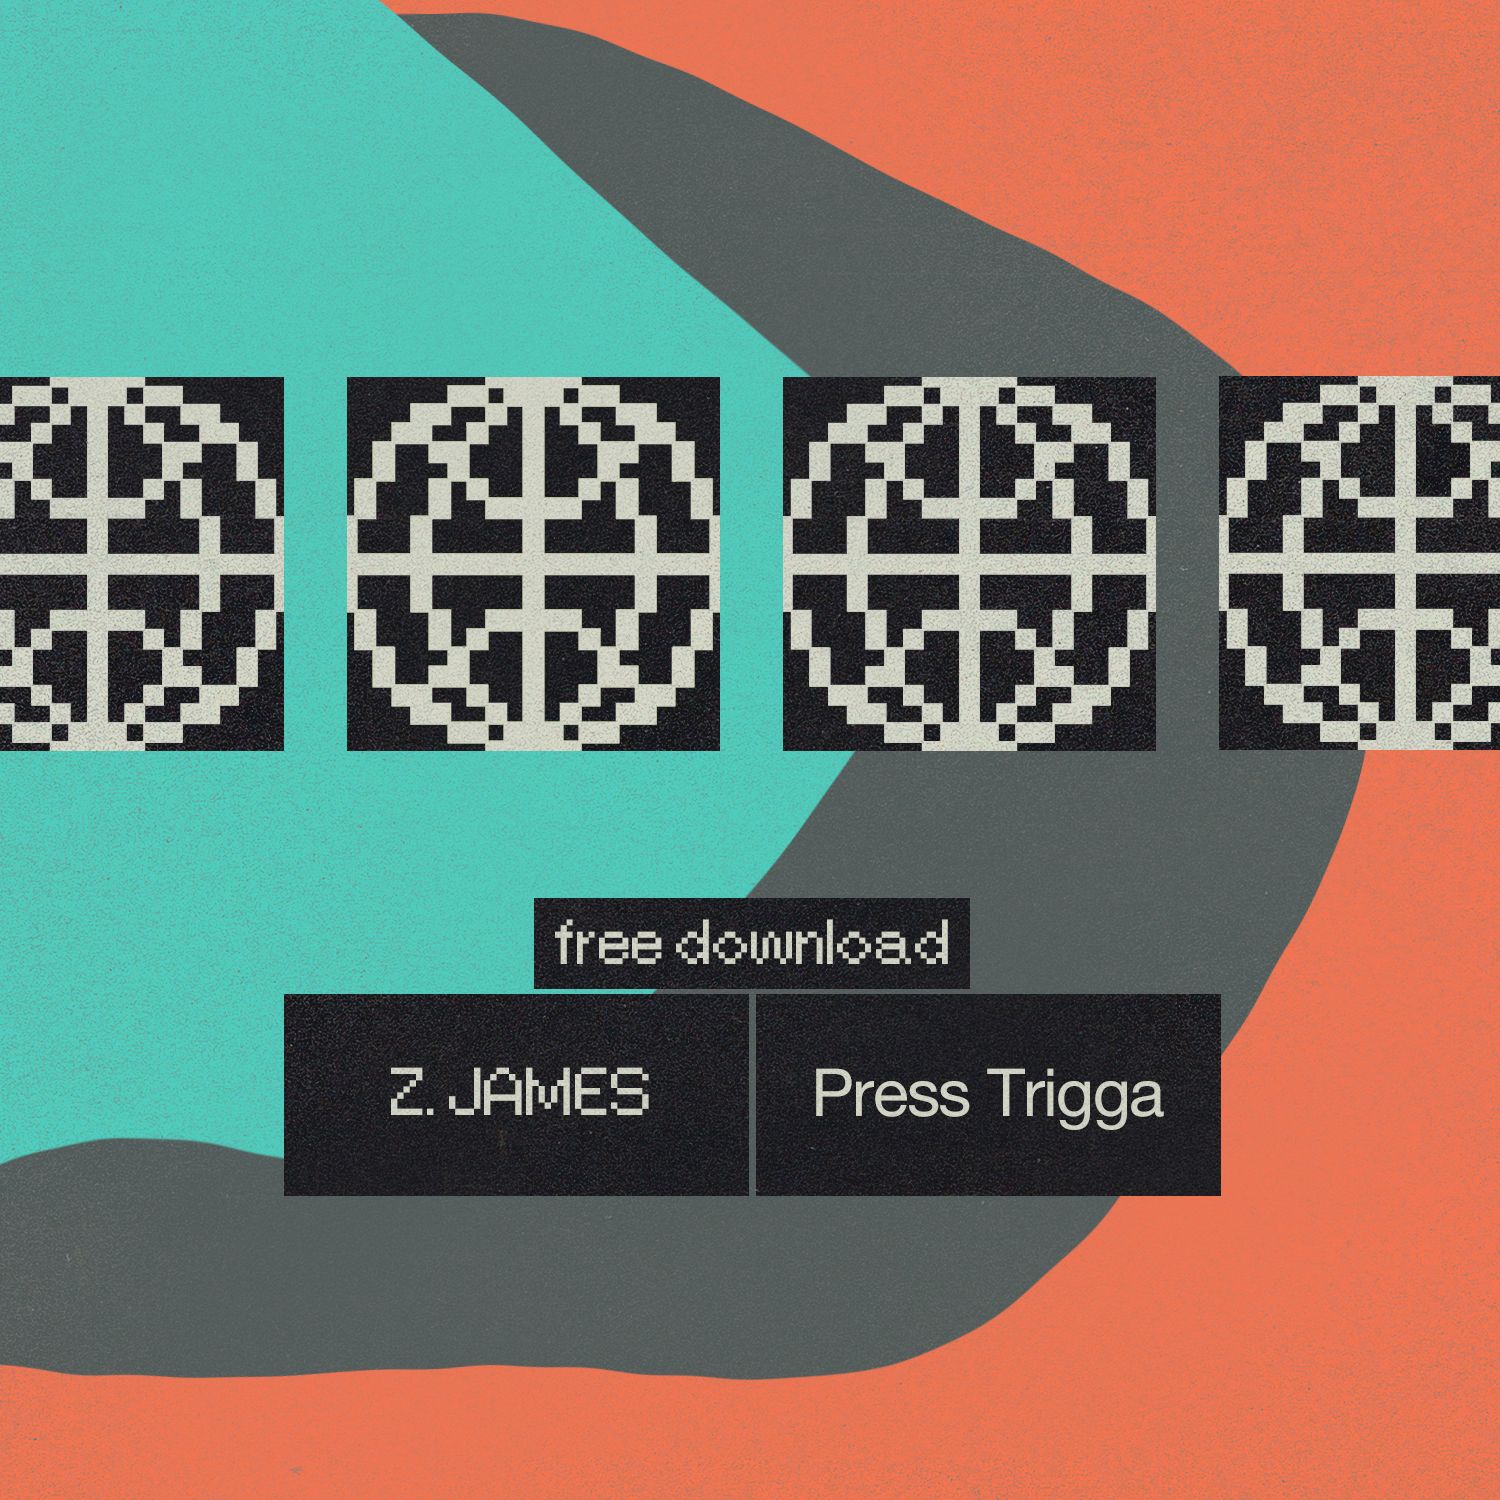 Stiahnuť ▼ Z.James - Press Trigga [Free DL]